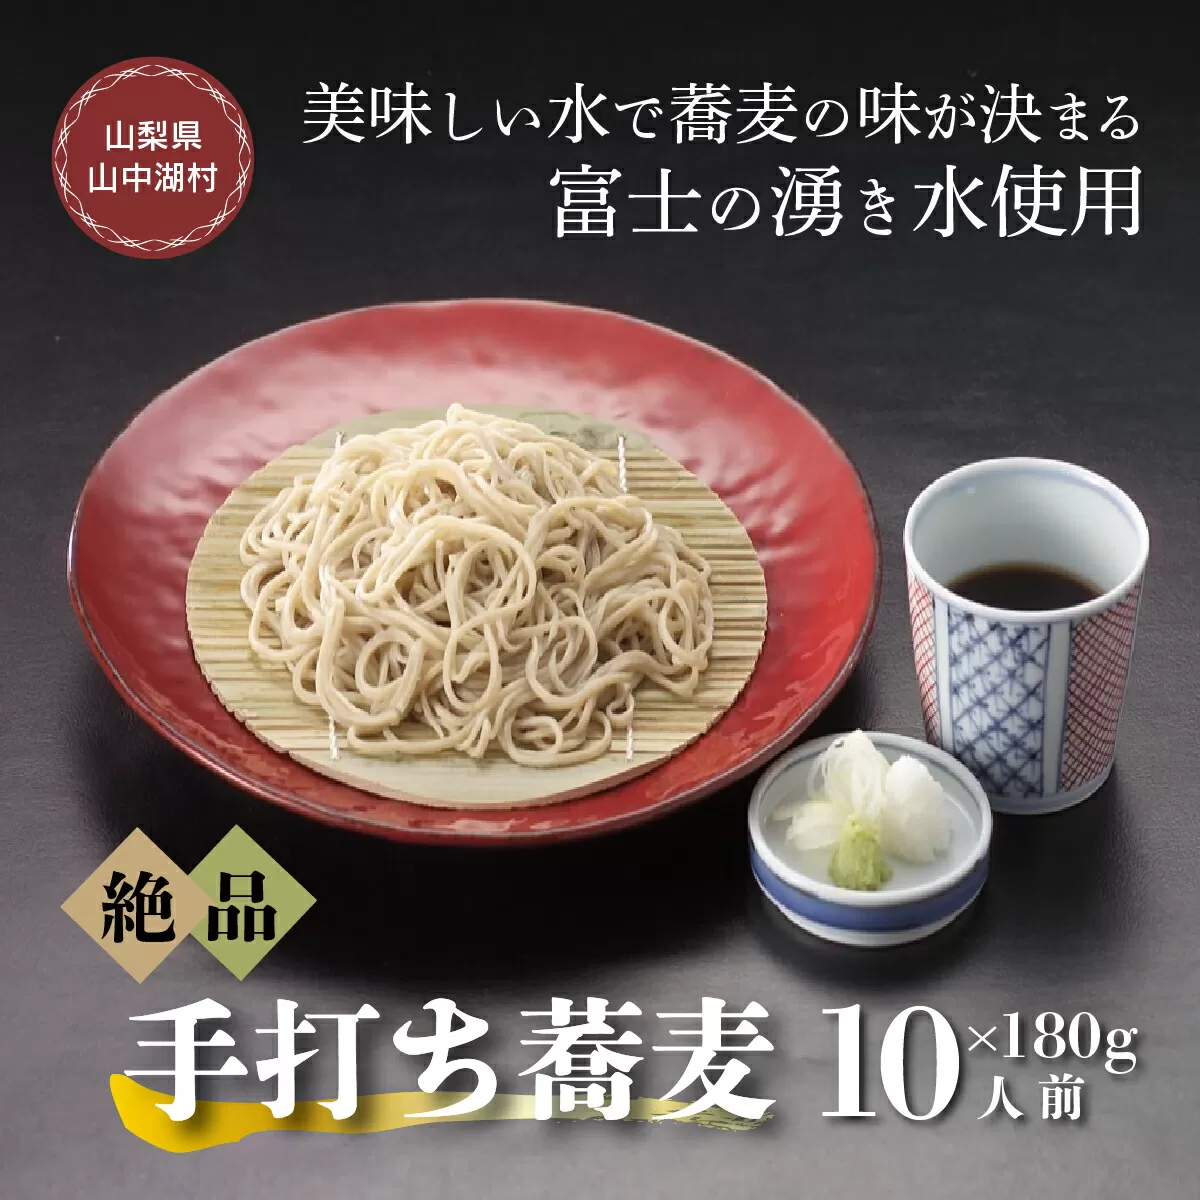 富士山の湧水冷凍手打ゆで蕎麦１０人前つゆ付電子レンジ調理専用商品 YU002